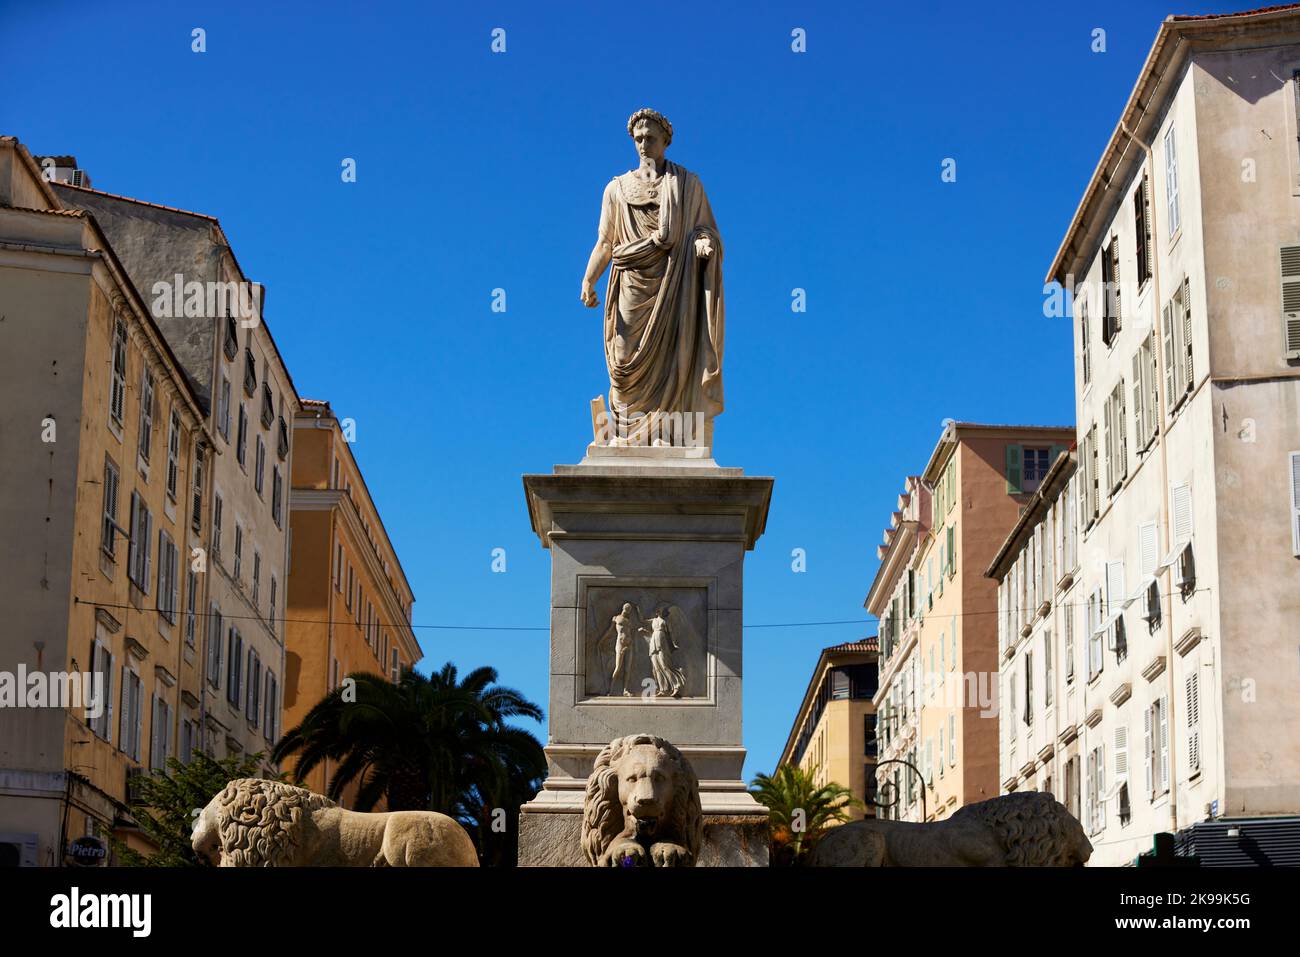 Hafenstadt Ajacio Hauptstadt von Korsika, französische Insel im Mittelmeer. Statua di Napoleone am Foch-Platz Stockfoto